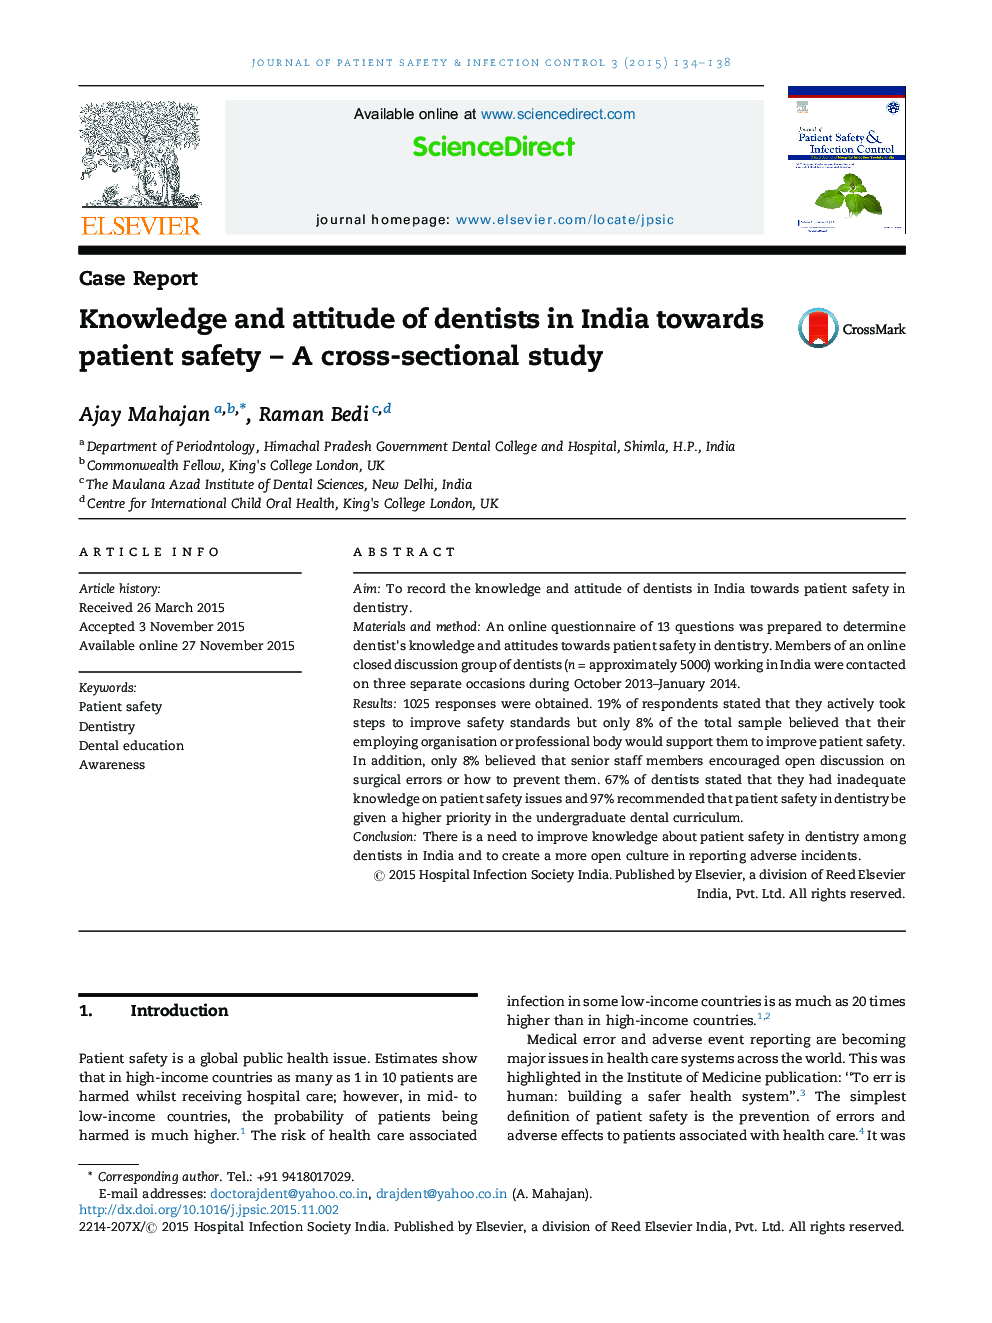 دانش و نگرش دندانپزشکان در هند به سمت ایمنی بیمار یک مطالعه مقطعی 